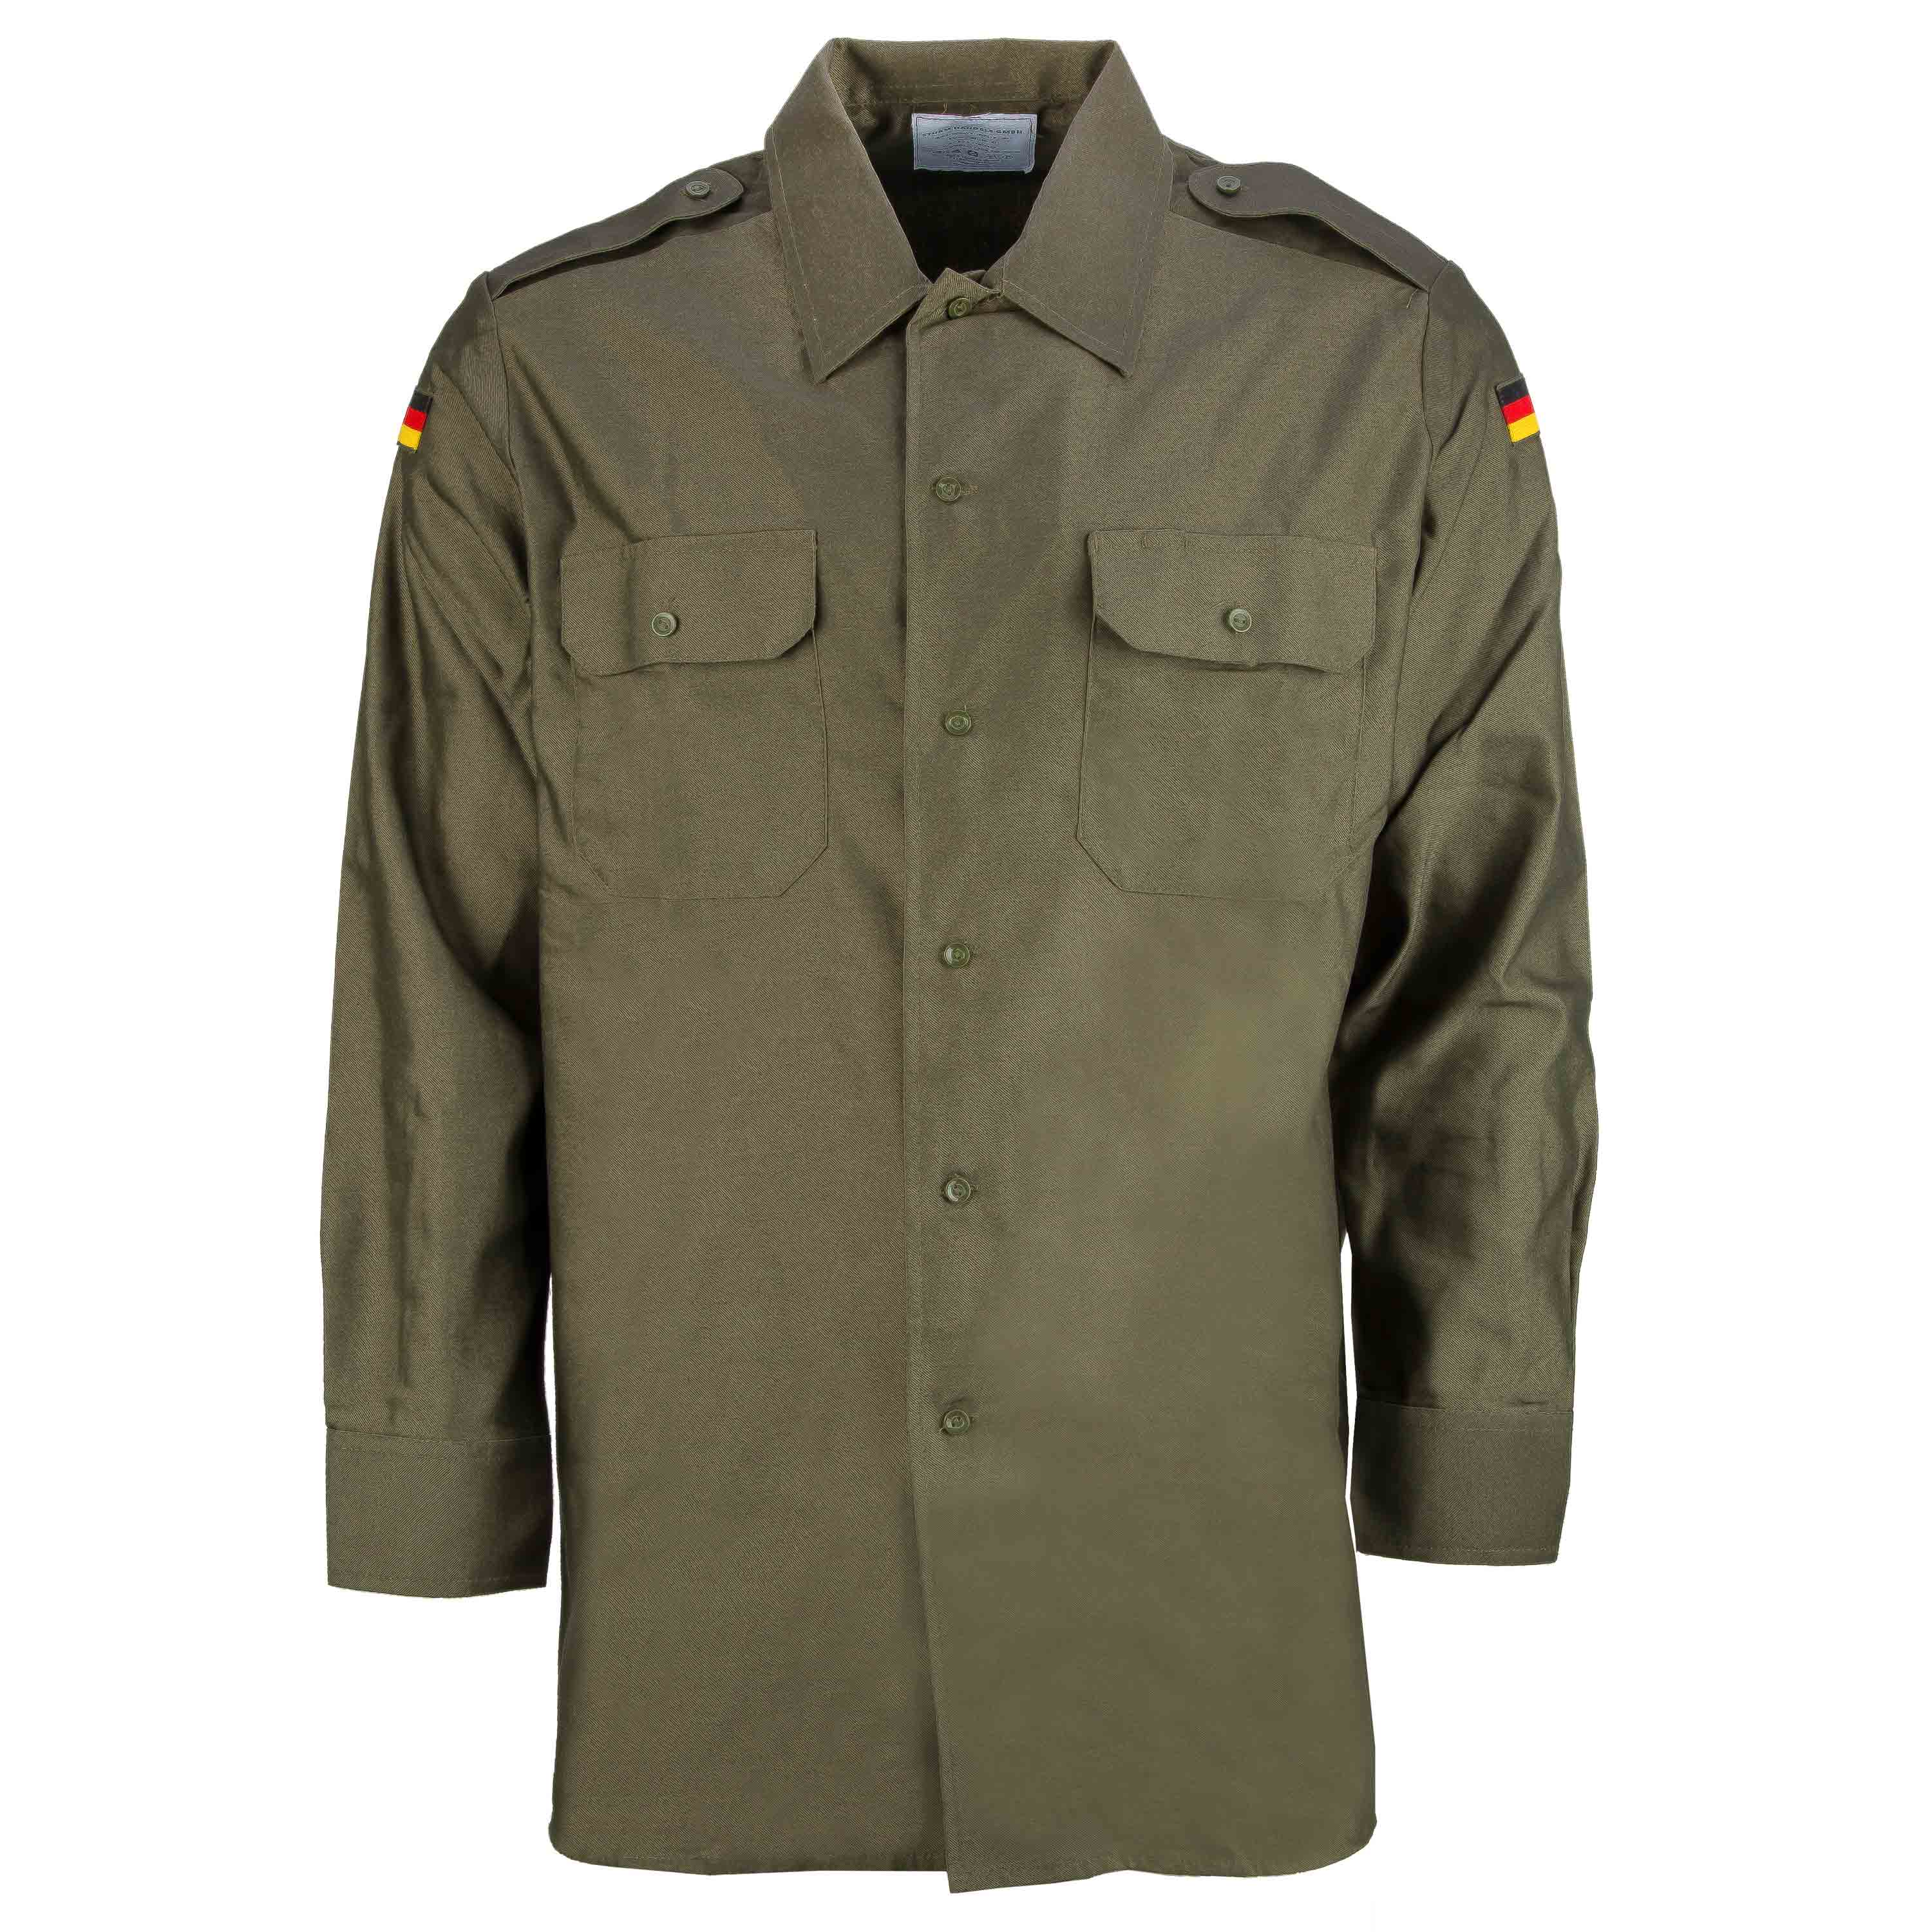 Neu Herren Feldhemd der Bundeswehr Hemd langarm Hoheitsabzeichen Größe 39-48 